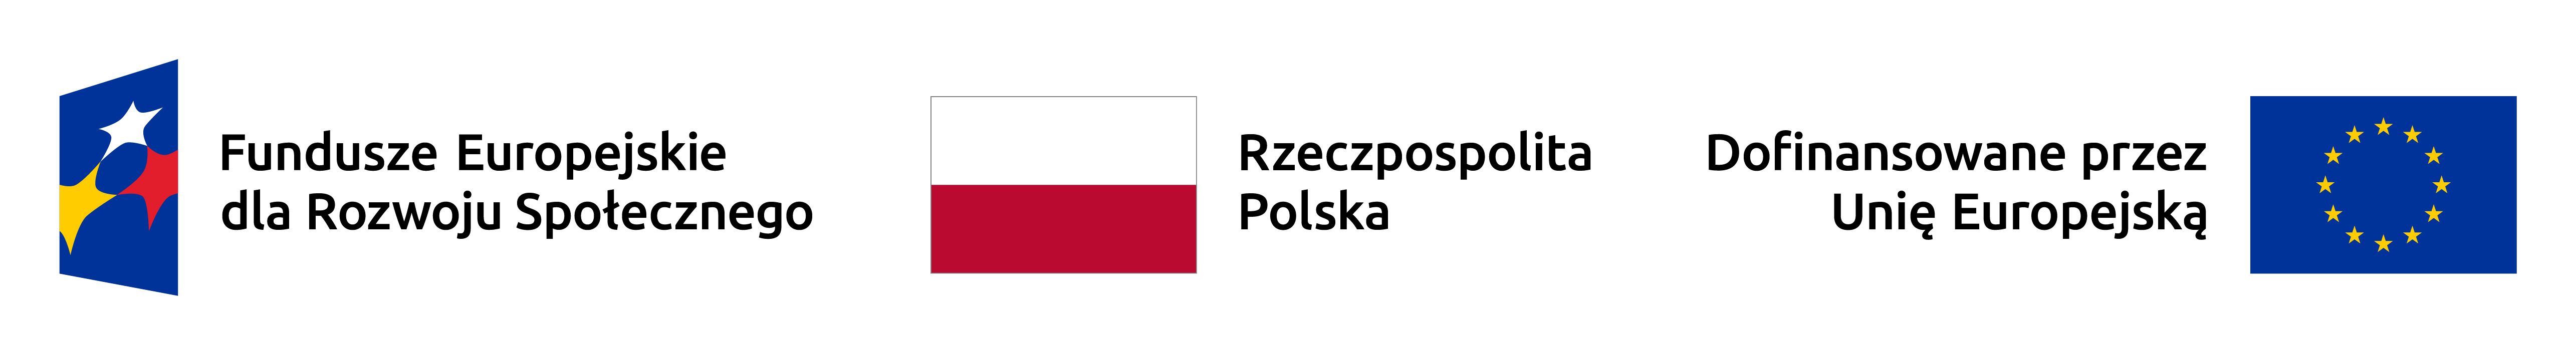 Logotypy Funduszy Europejskich, Rzeczpospolitej Polskiej oraz Unii Europejskiej